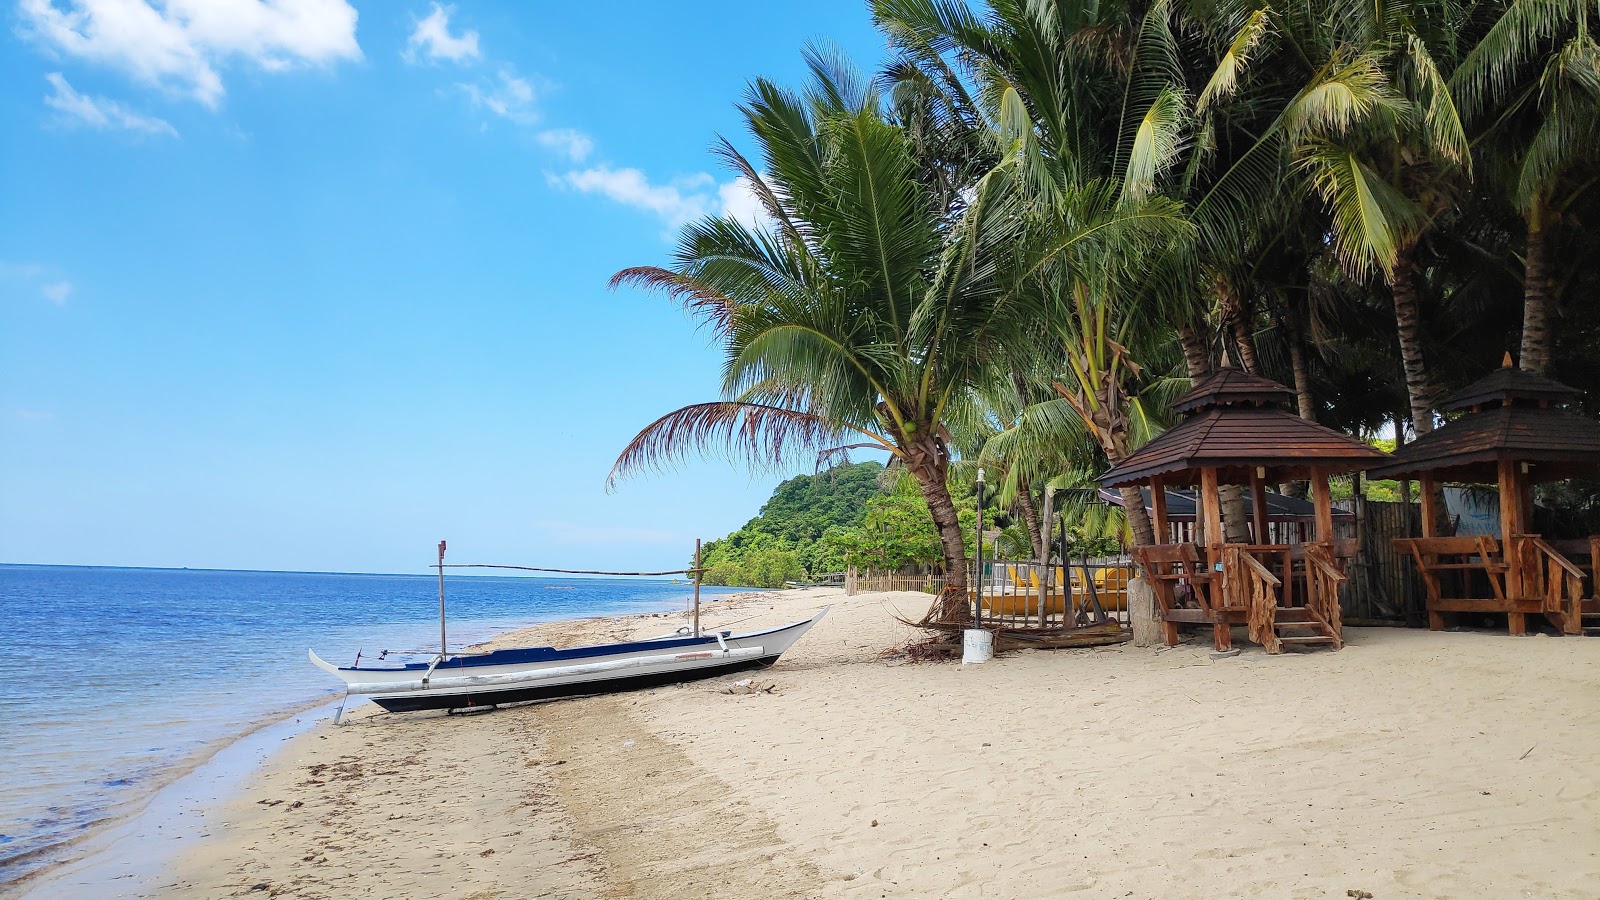 Zdjęcie Lian batangas beach - popularne miejsce wśród znawców relaksu